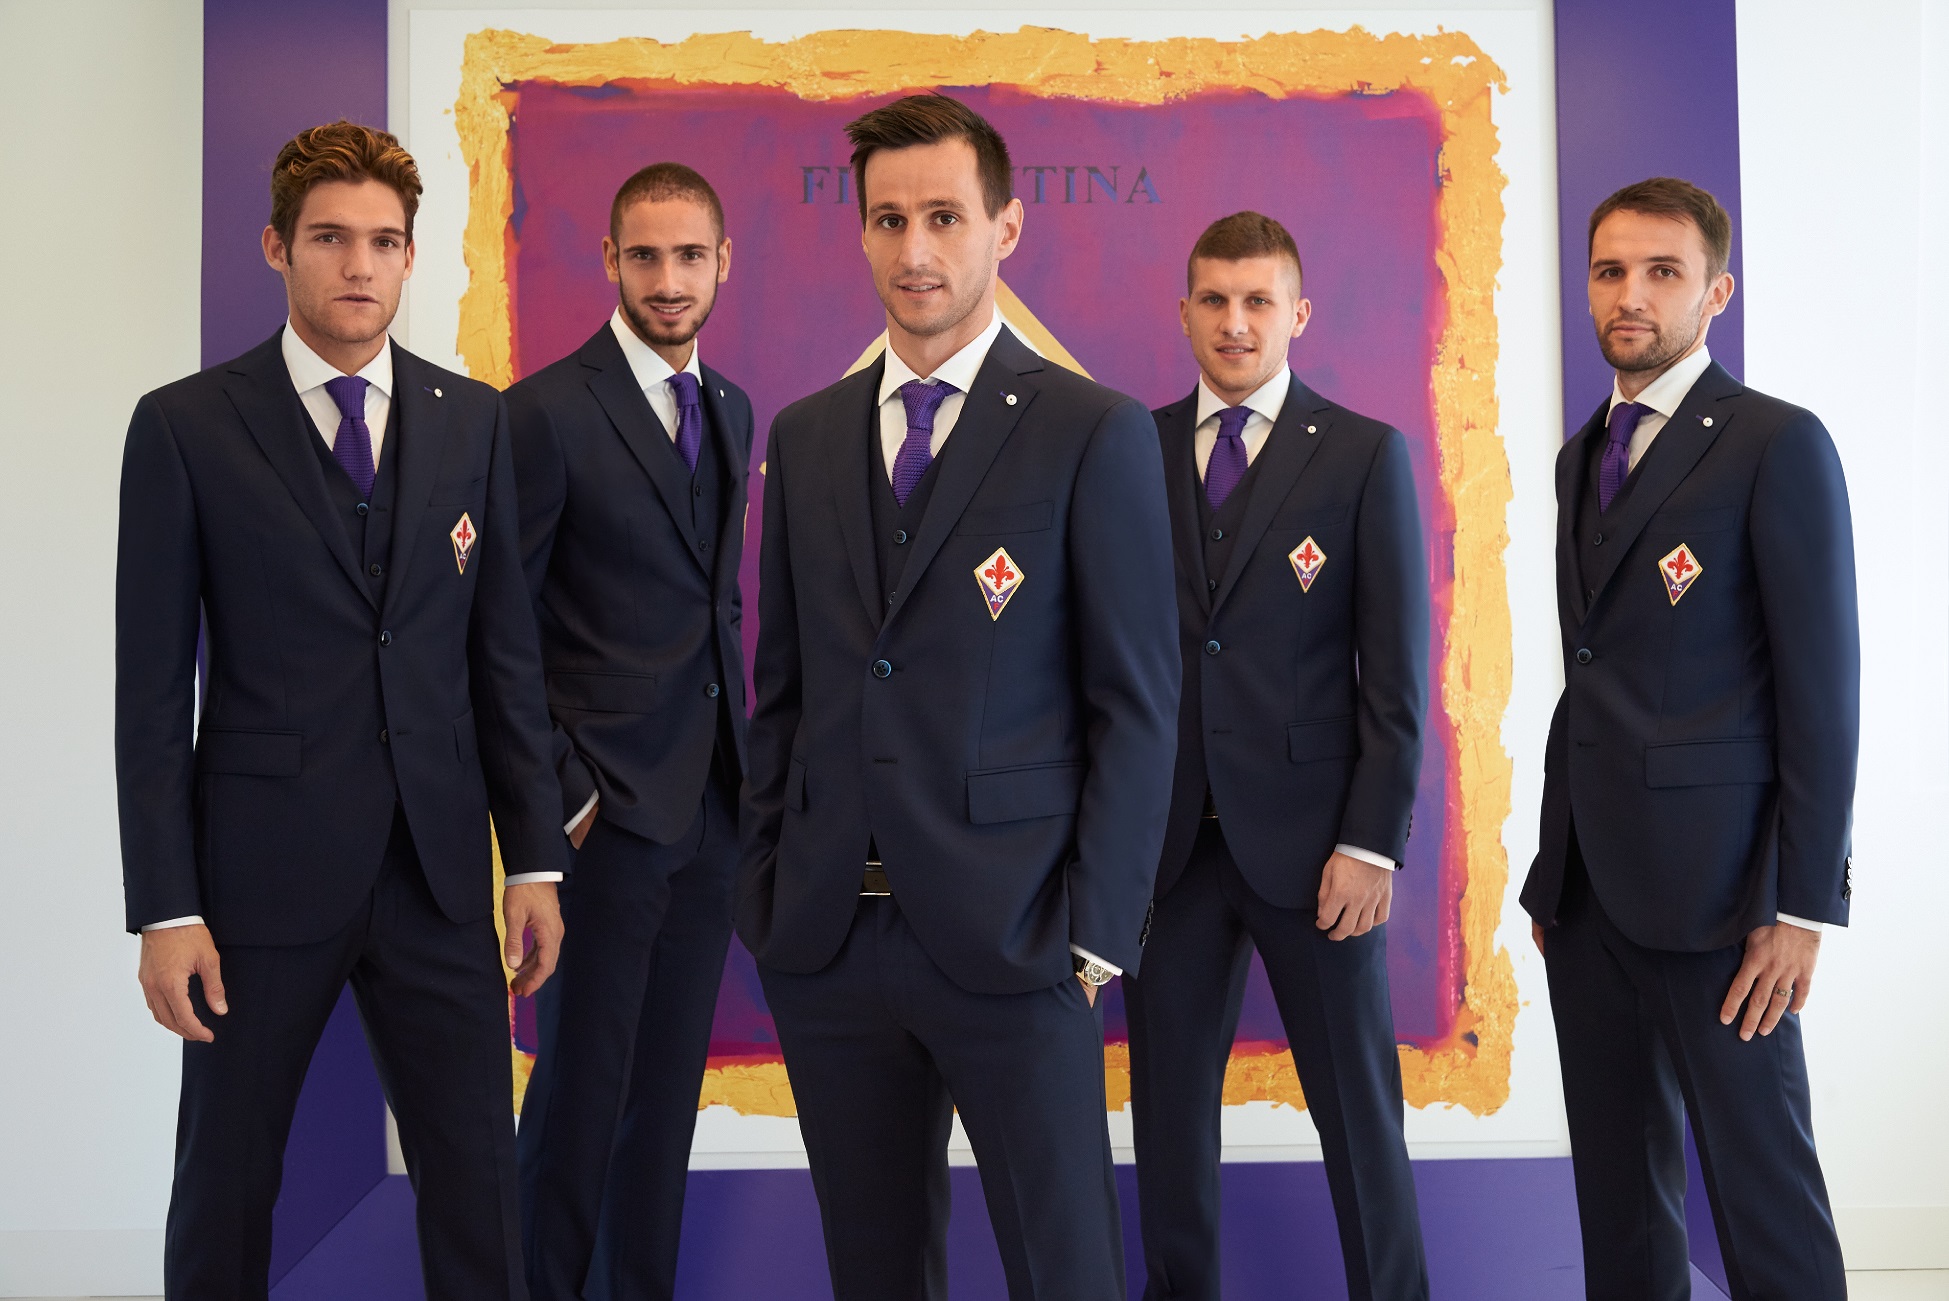 Fiorentina calcio: l’abito formale dei giocatori è firmato L.B.M.1911